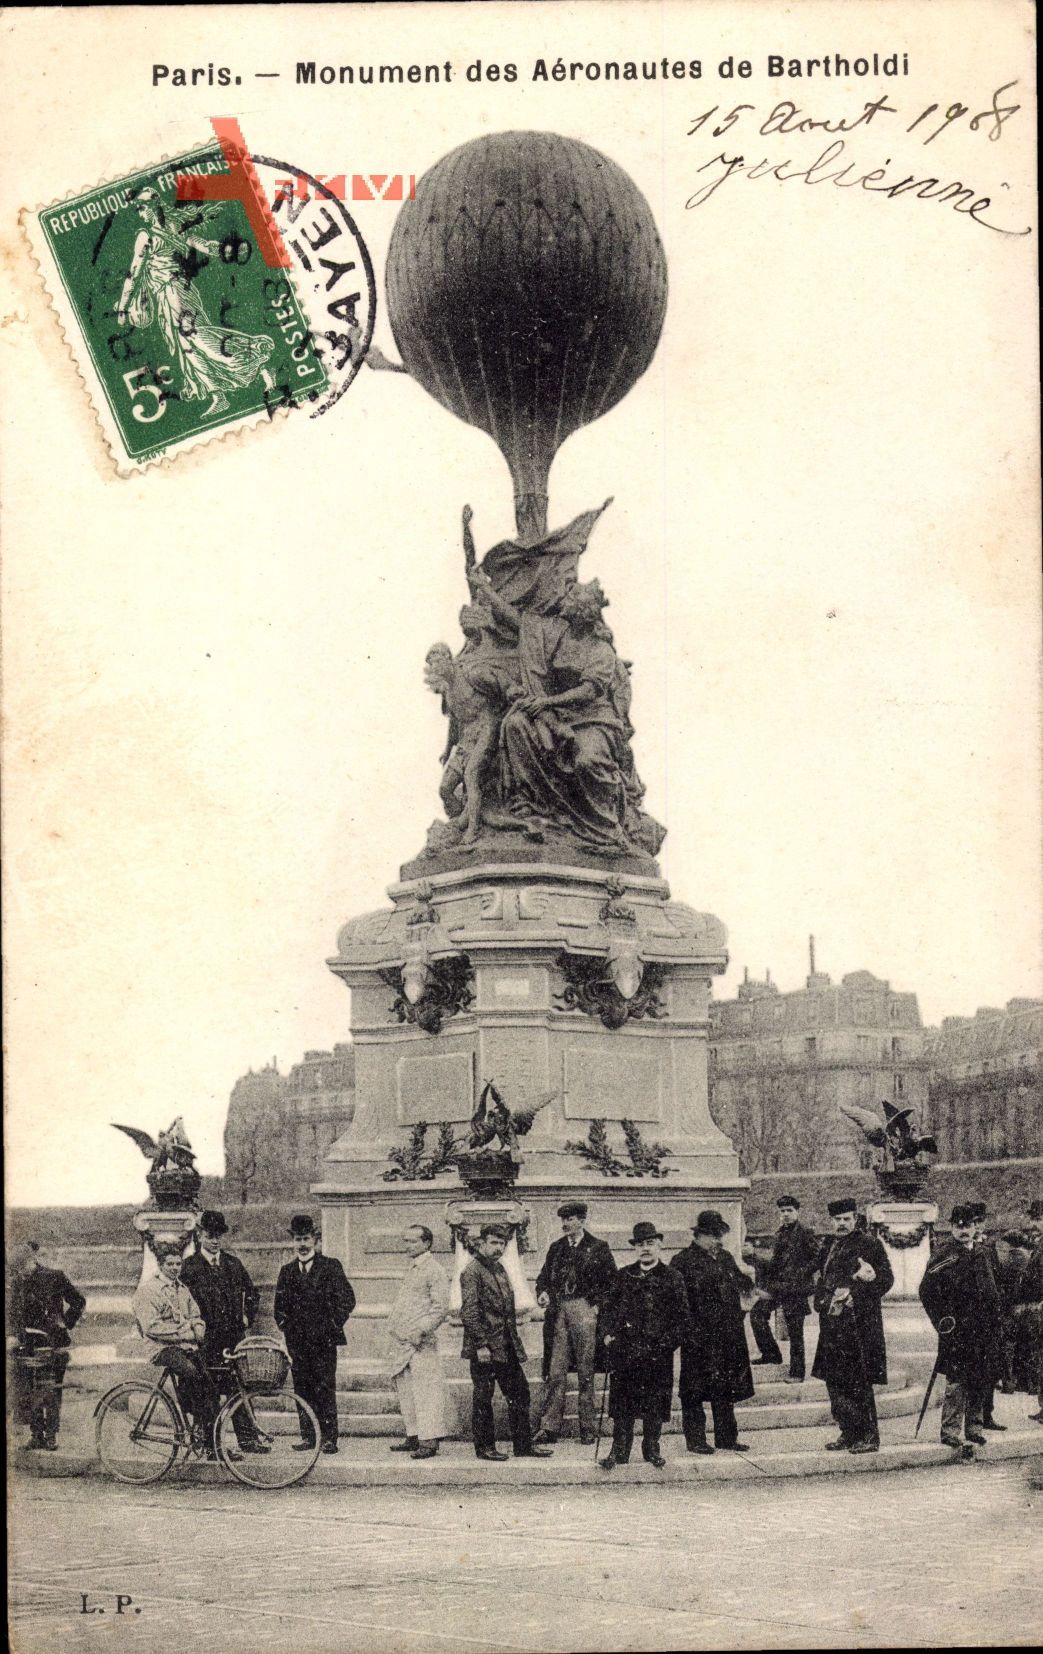 Paris, Monument des Aéronautes de Bartholdi, Ballon, Denkmal